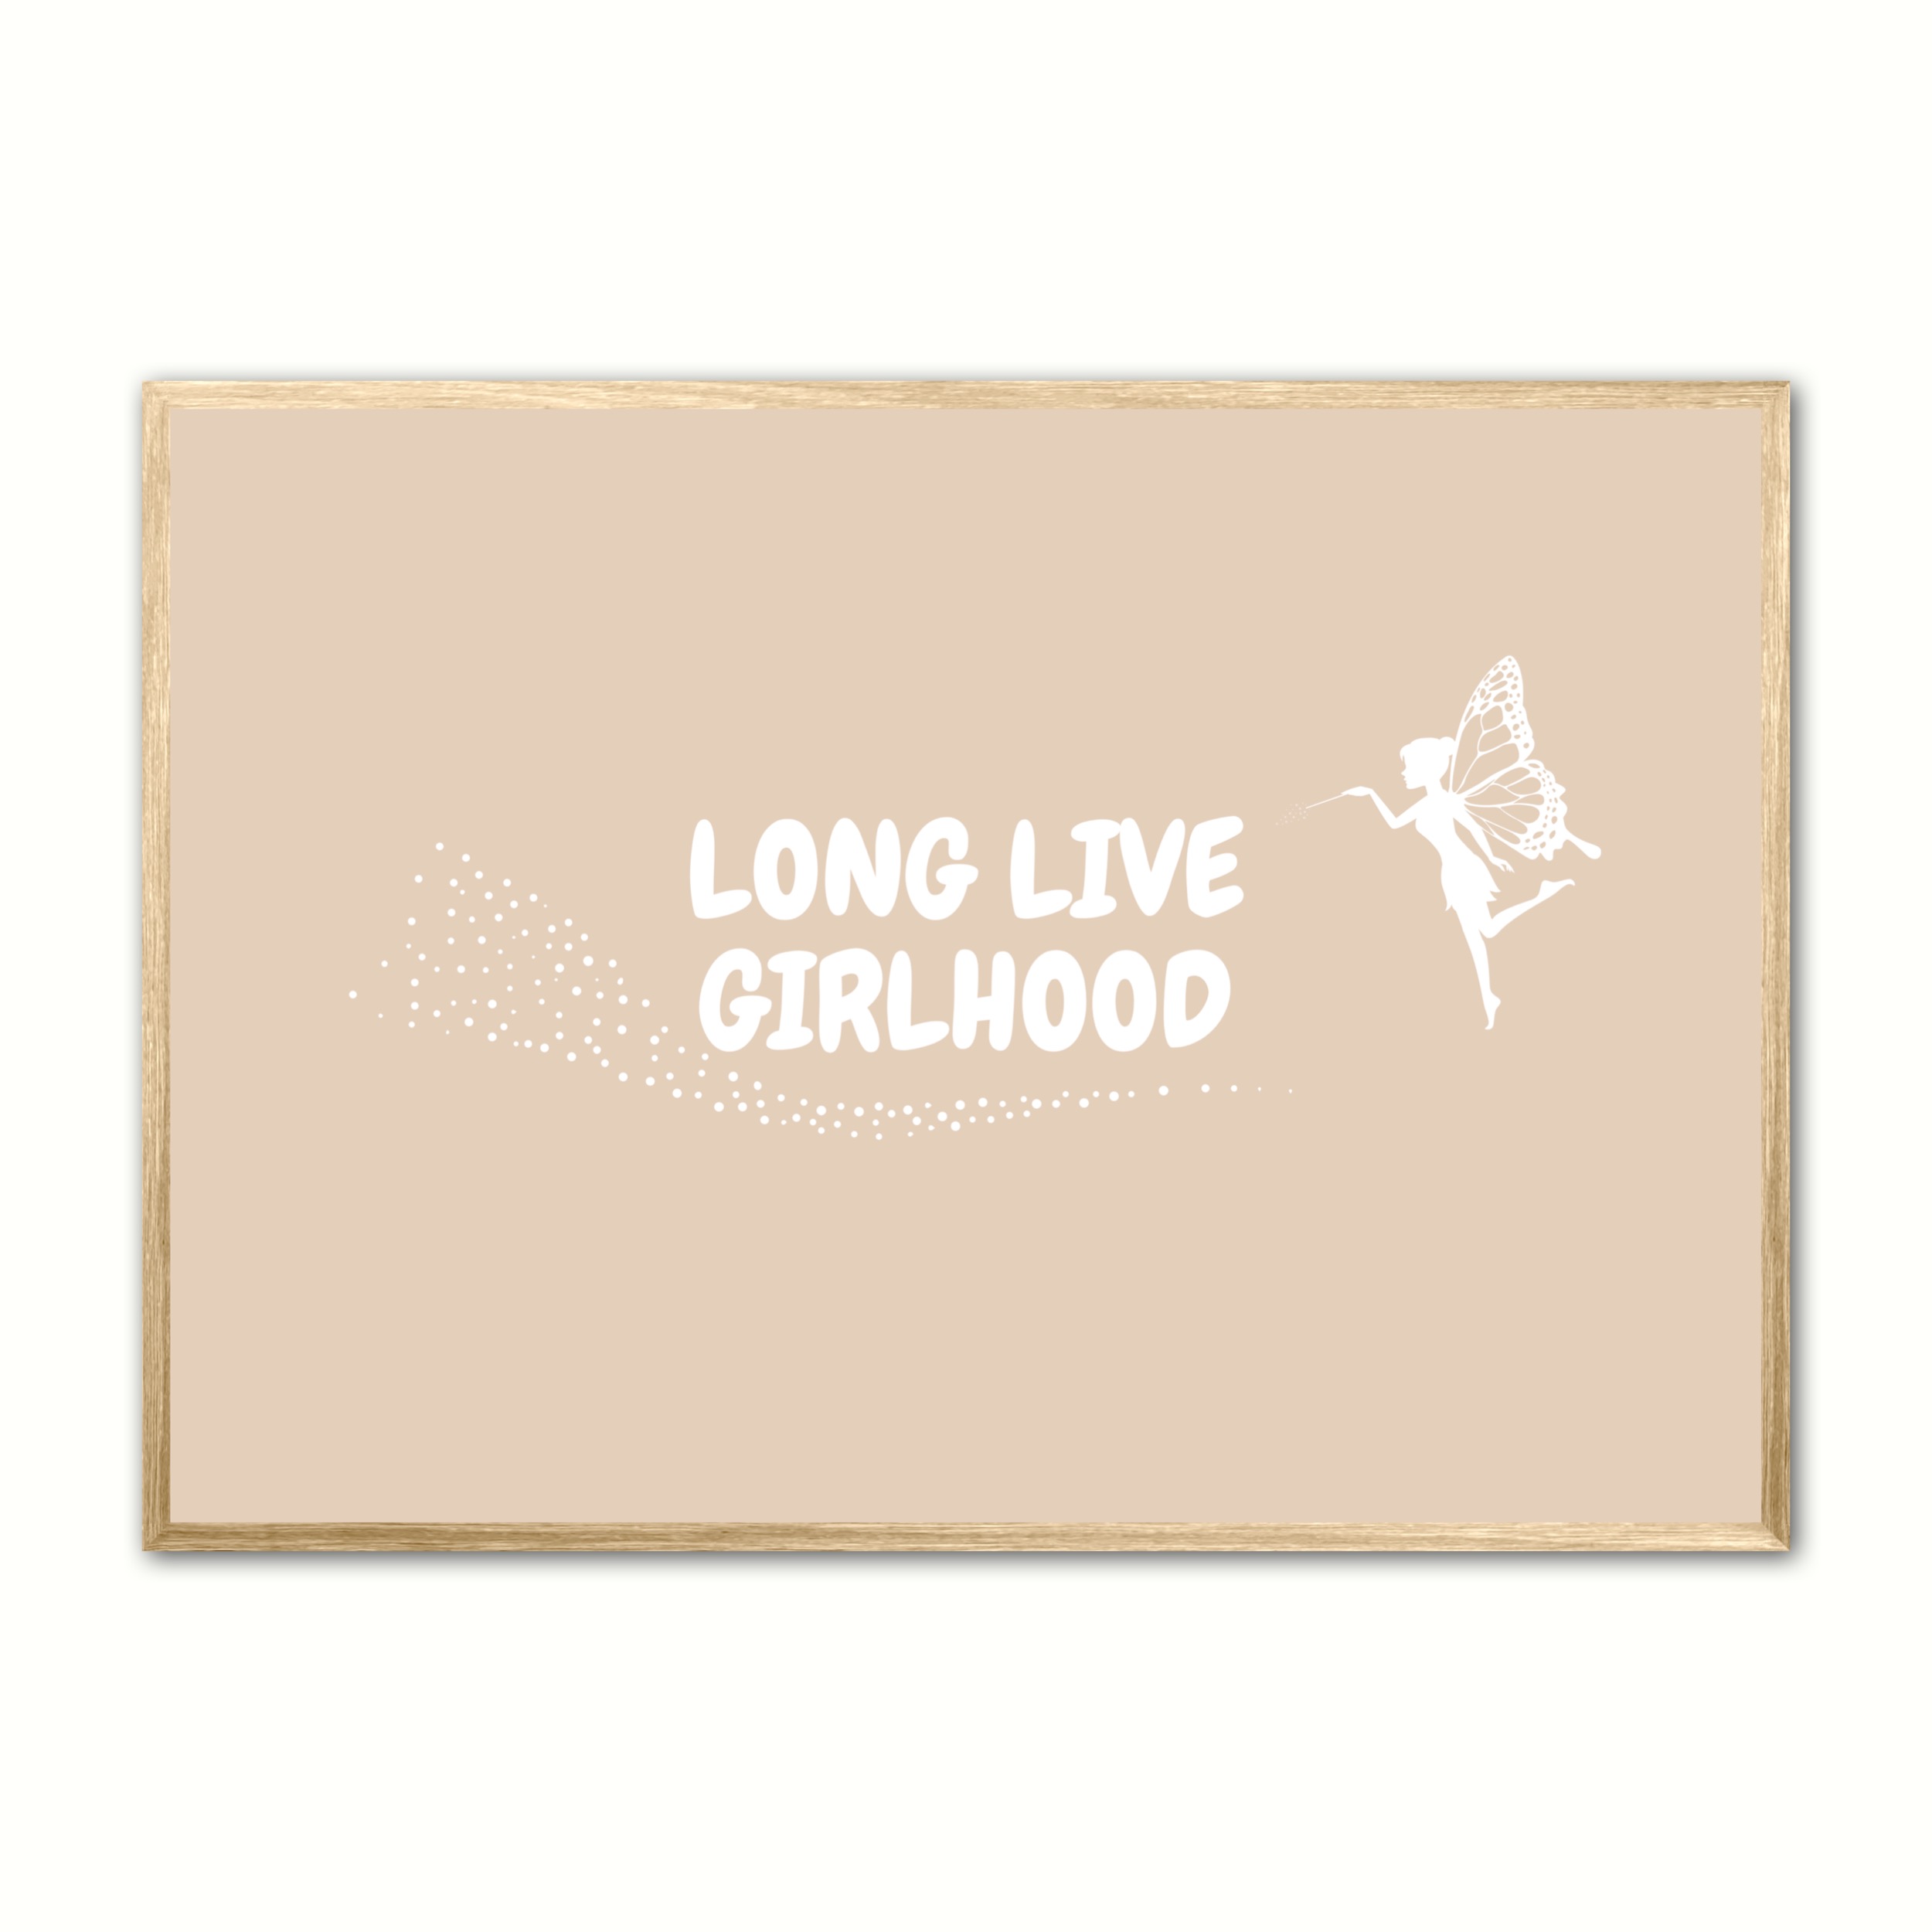 Billede af Plakat med Long Live Girlhood - Sand 21 x 29,7 cm (A4)